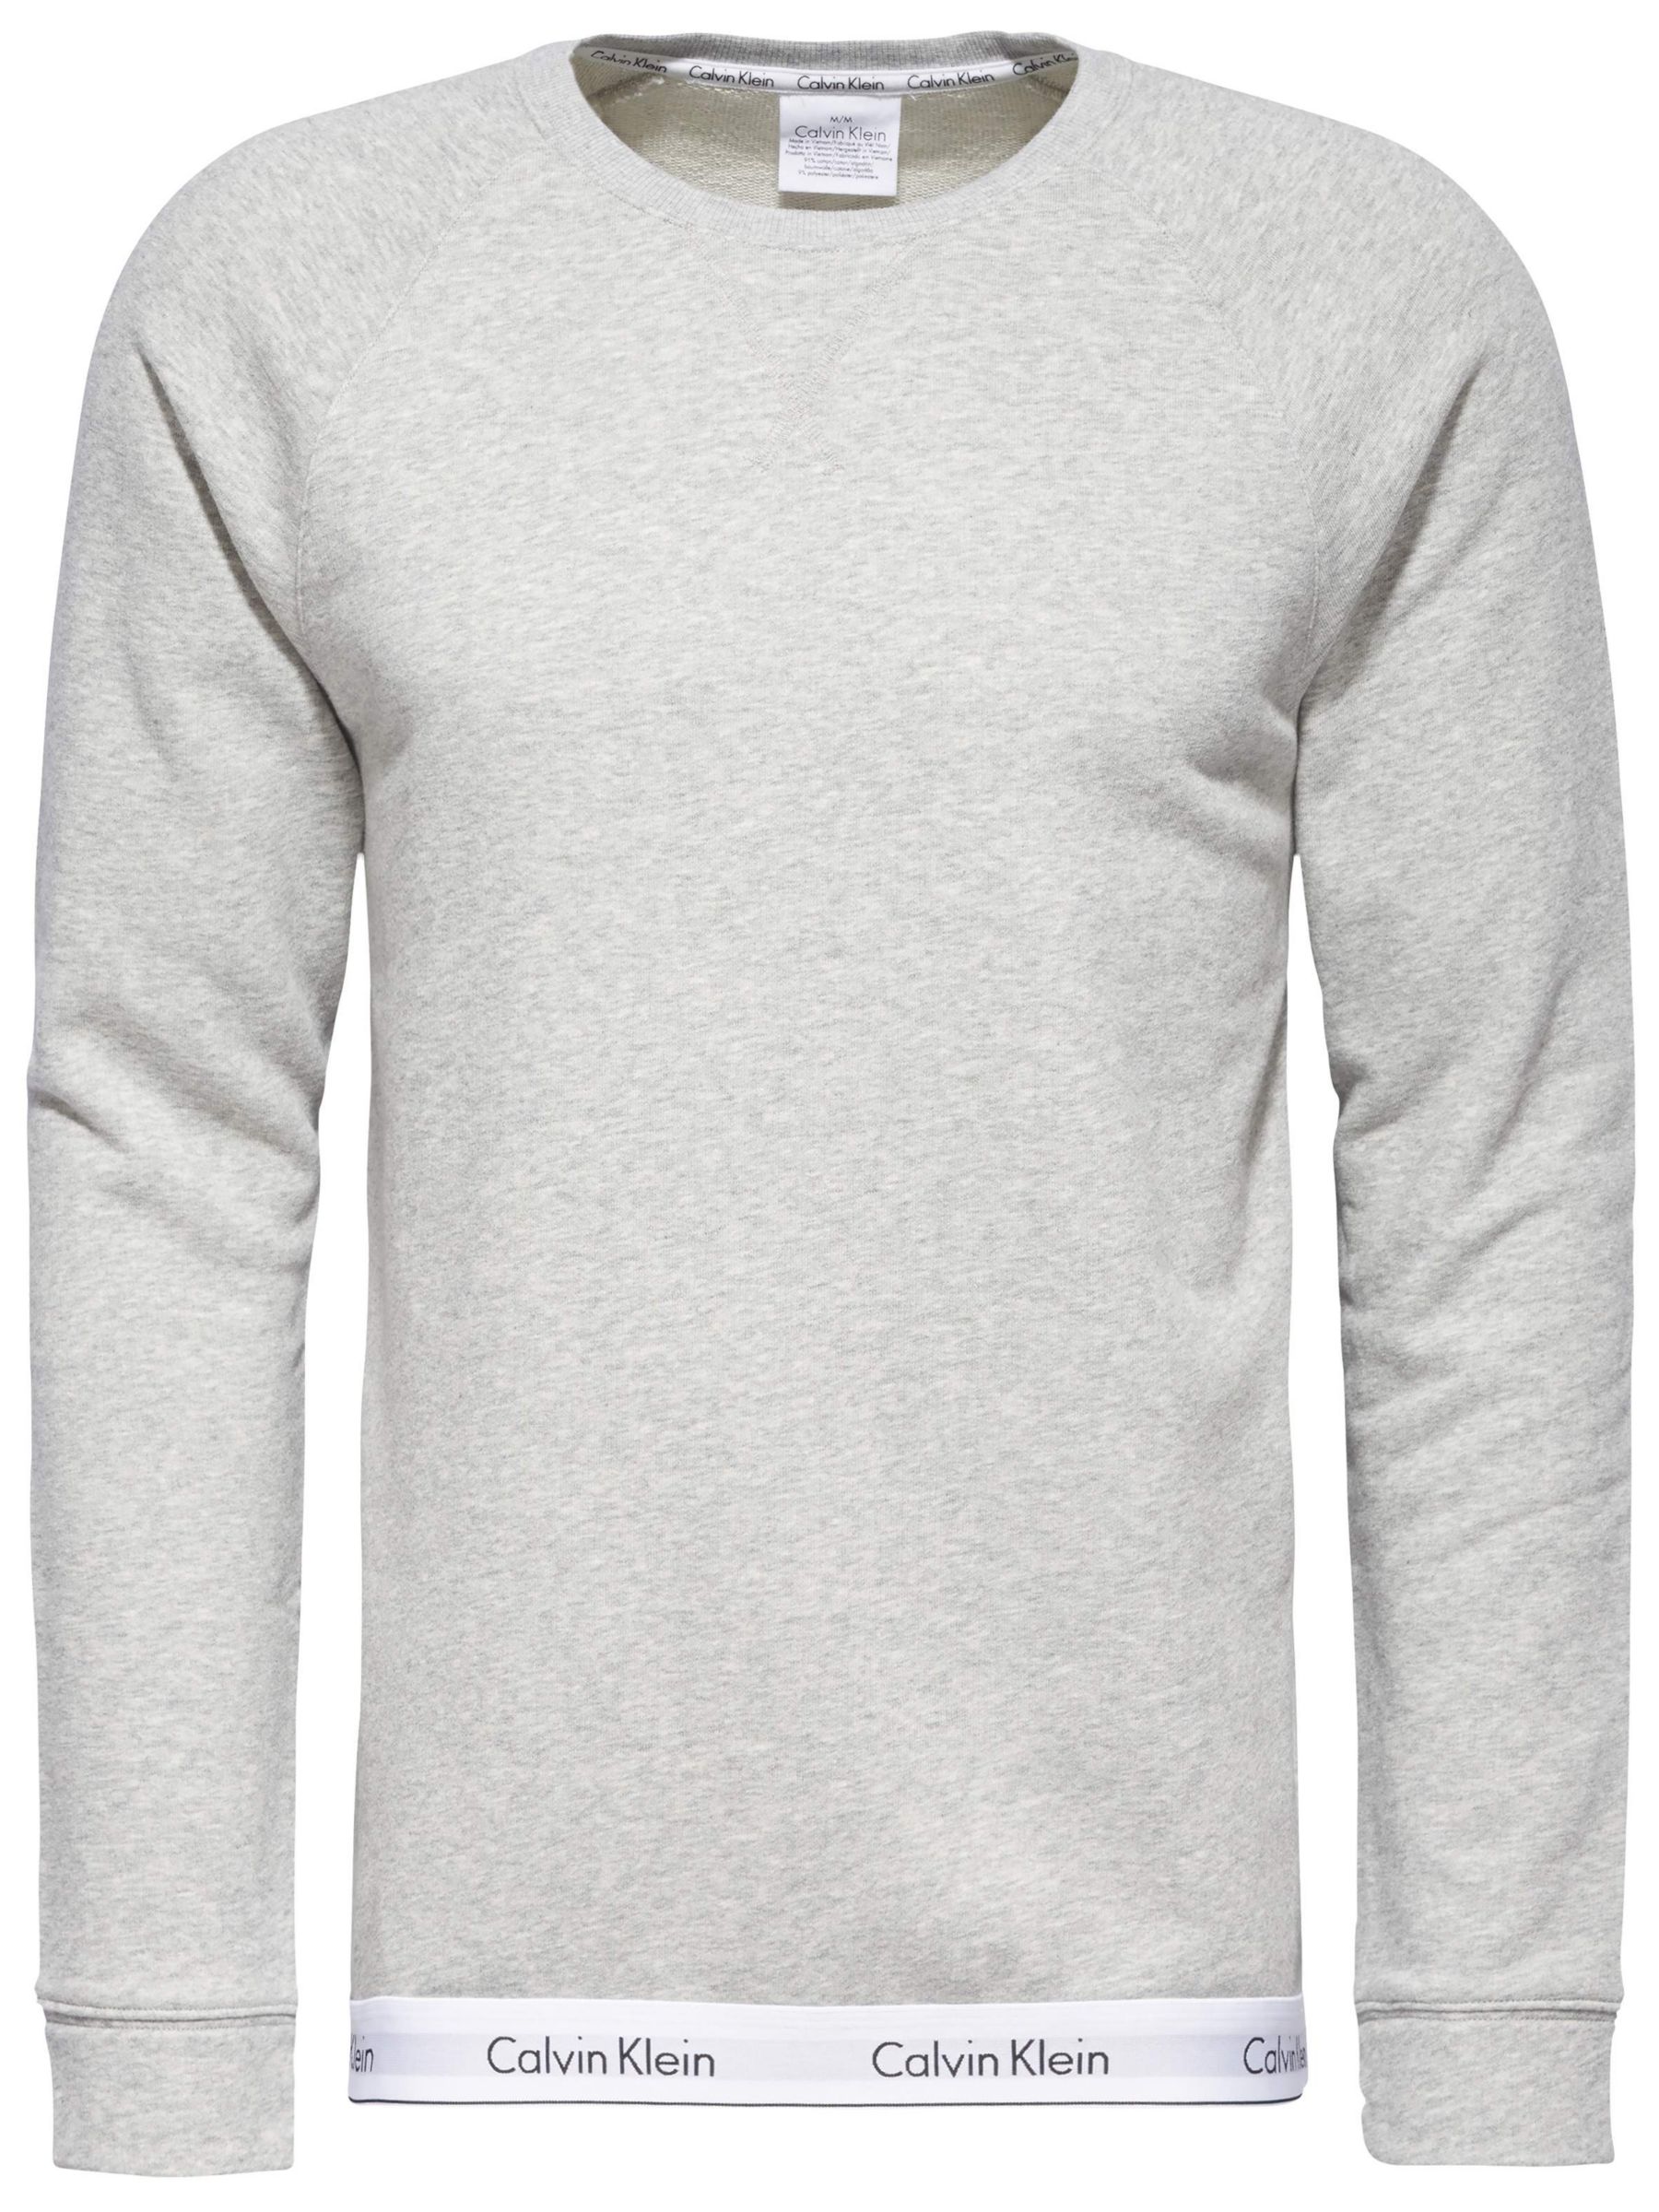 calvin klein modern cotton sweatshirt